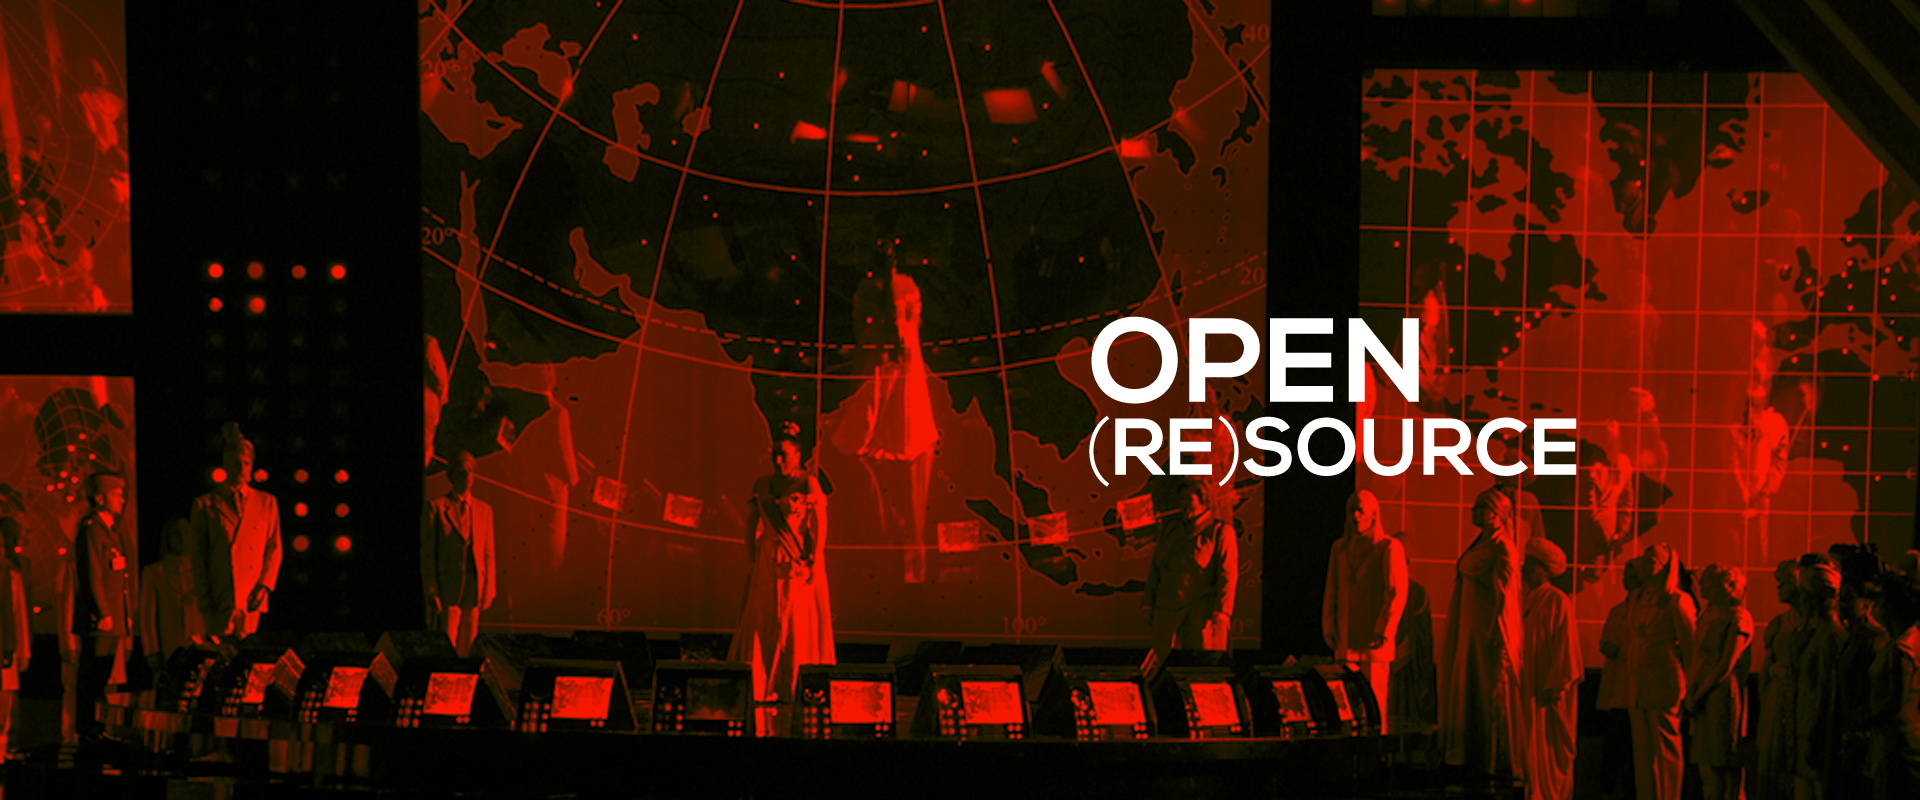 Open (Re)Source 2016 – Archivi Storici Versione 2.0